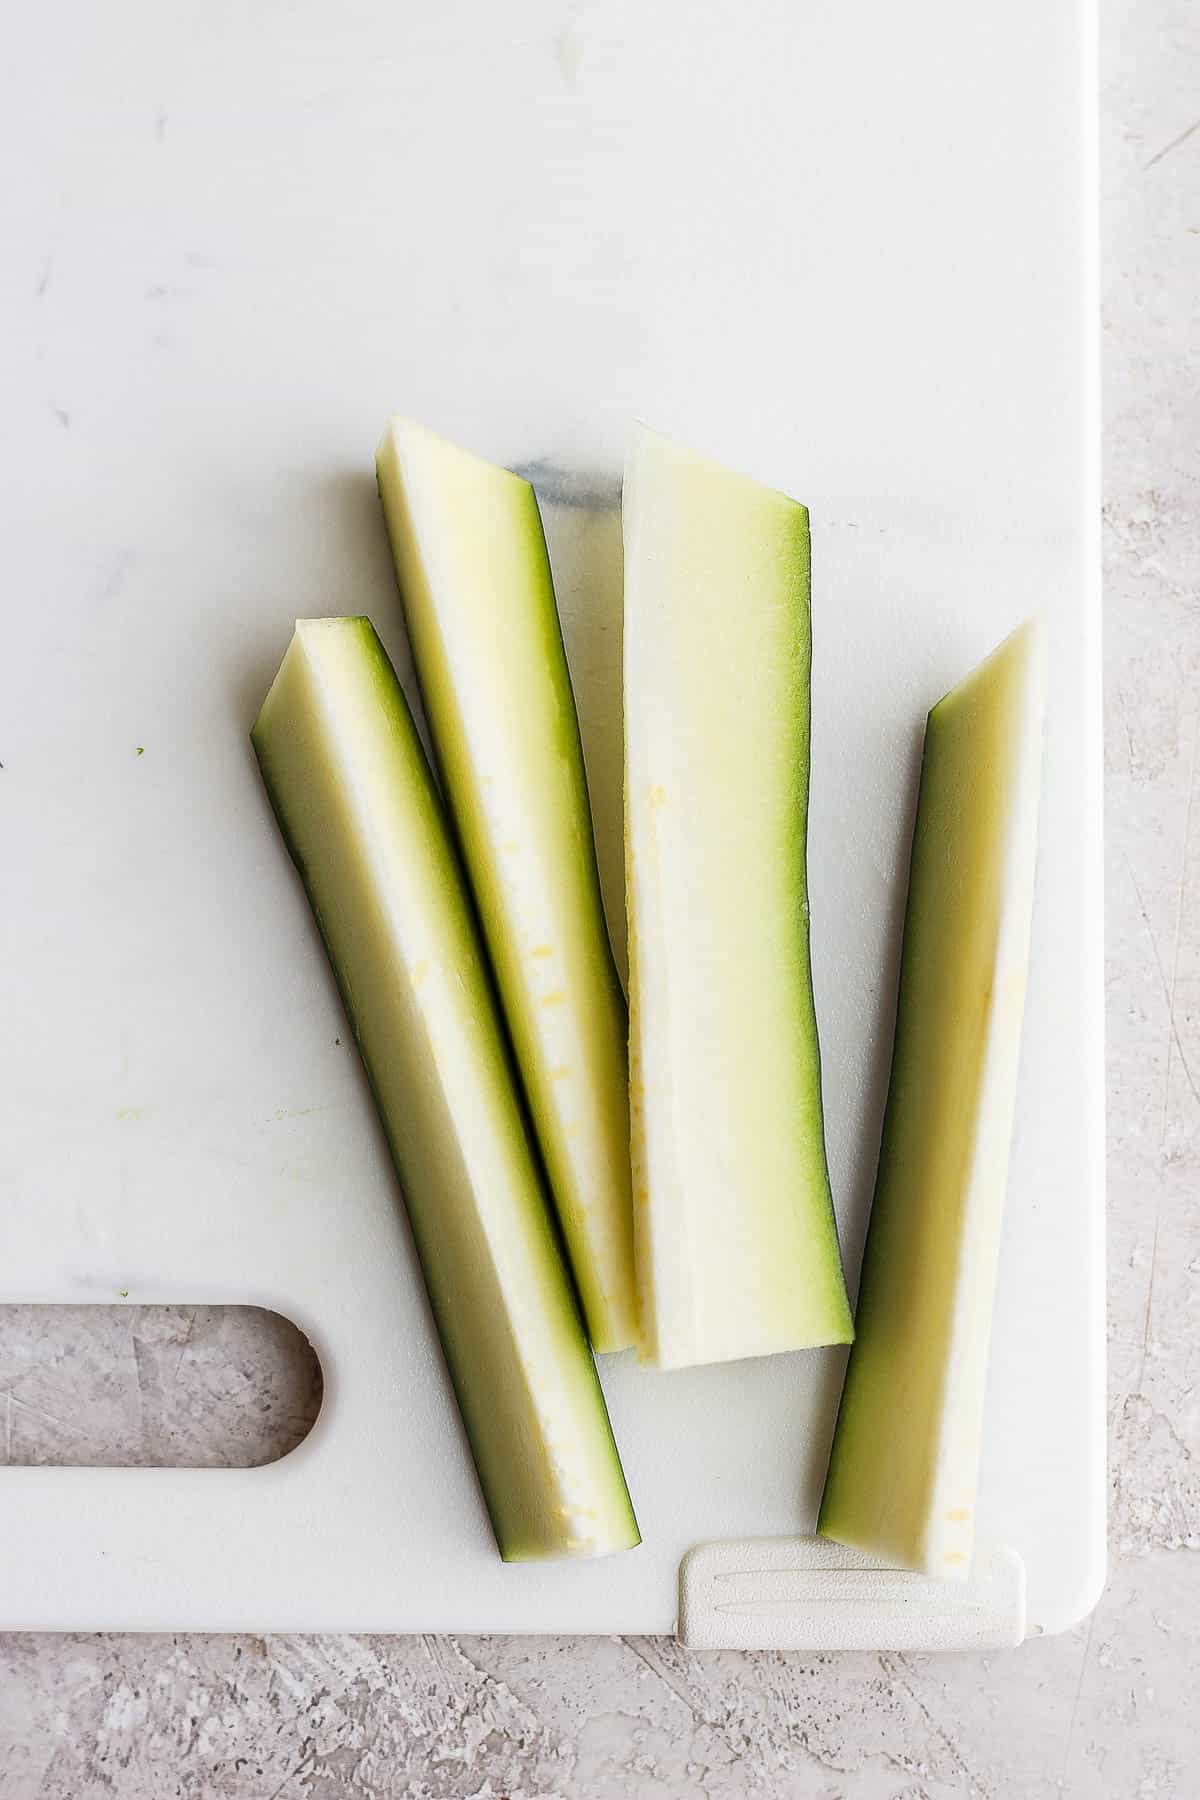 Zucchini sticks on a cutting board.